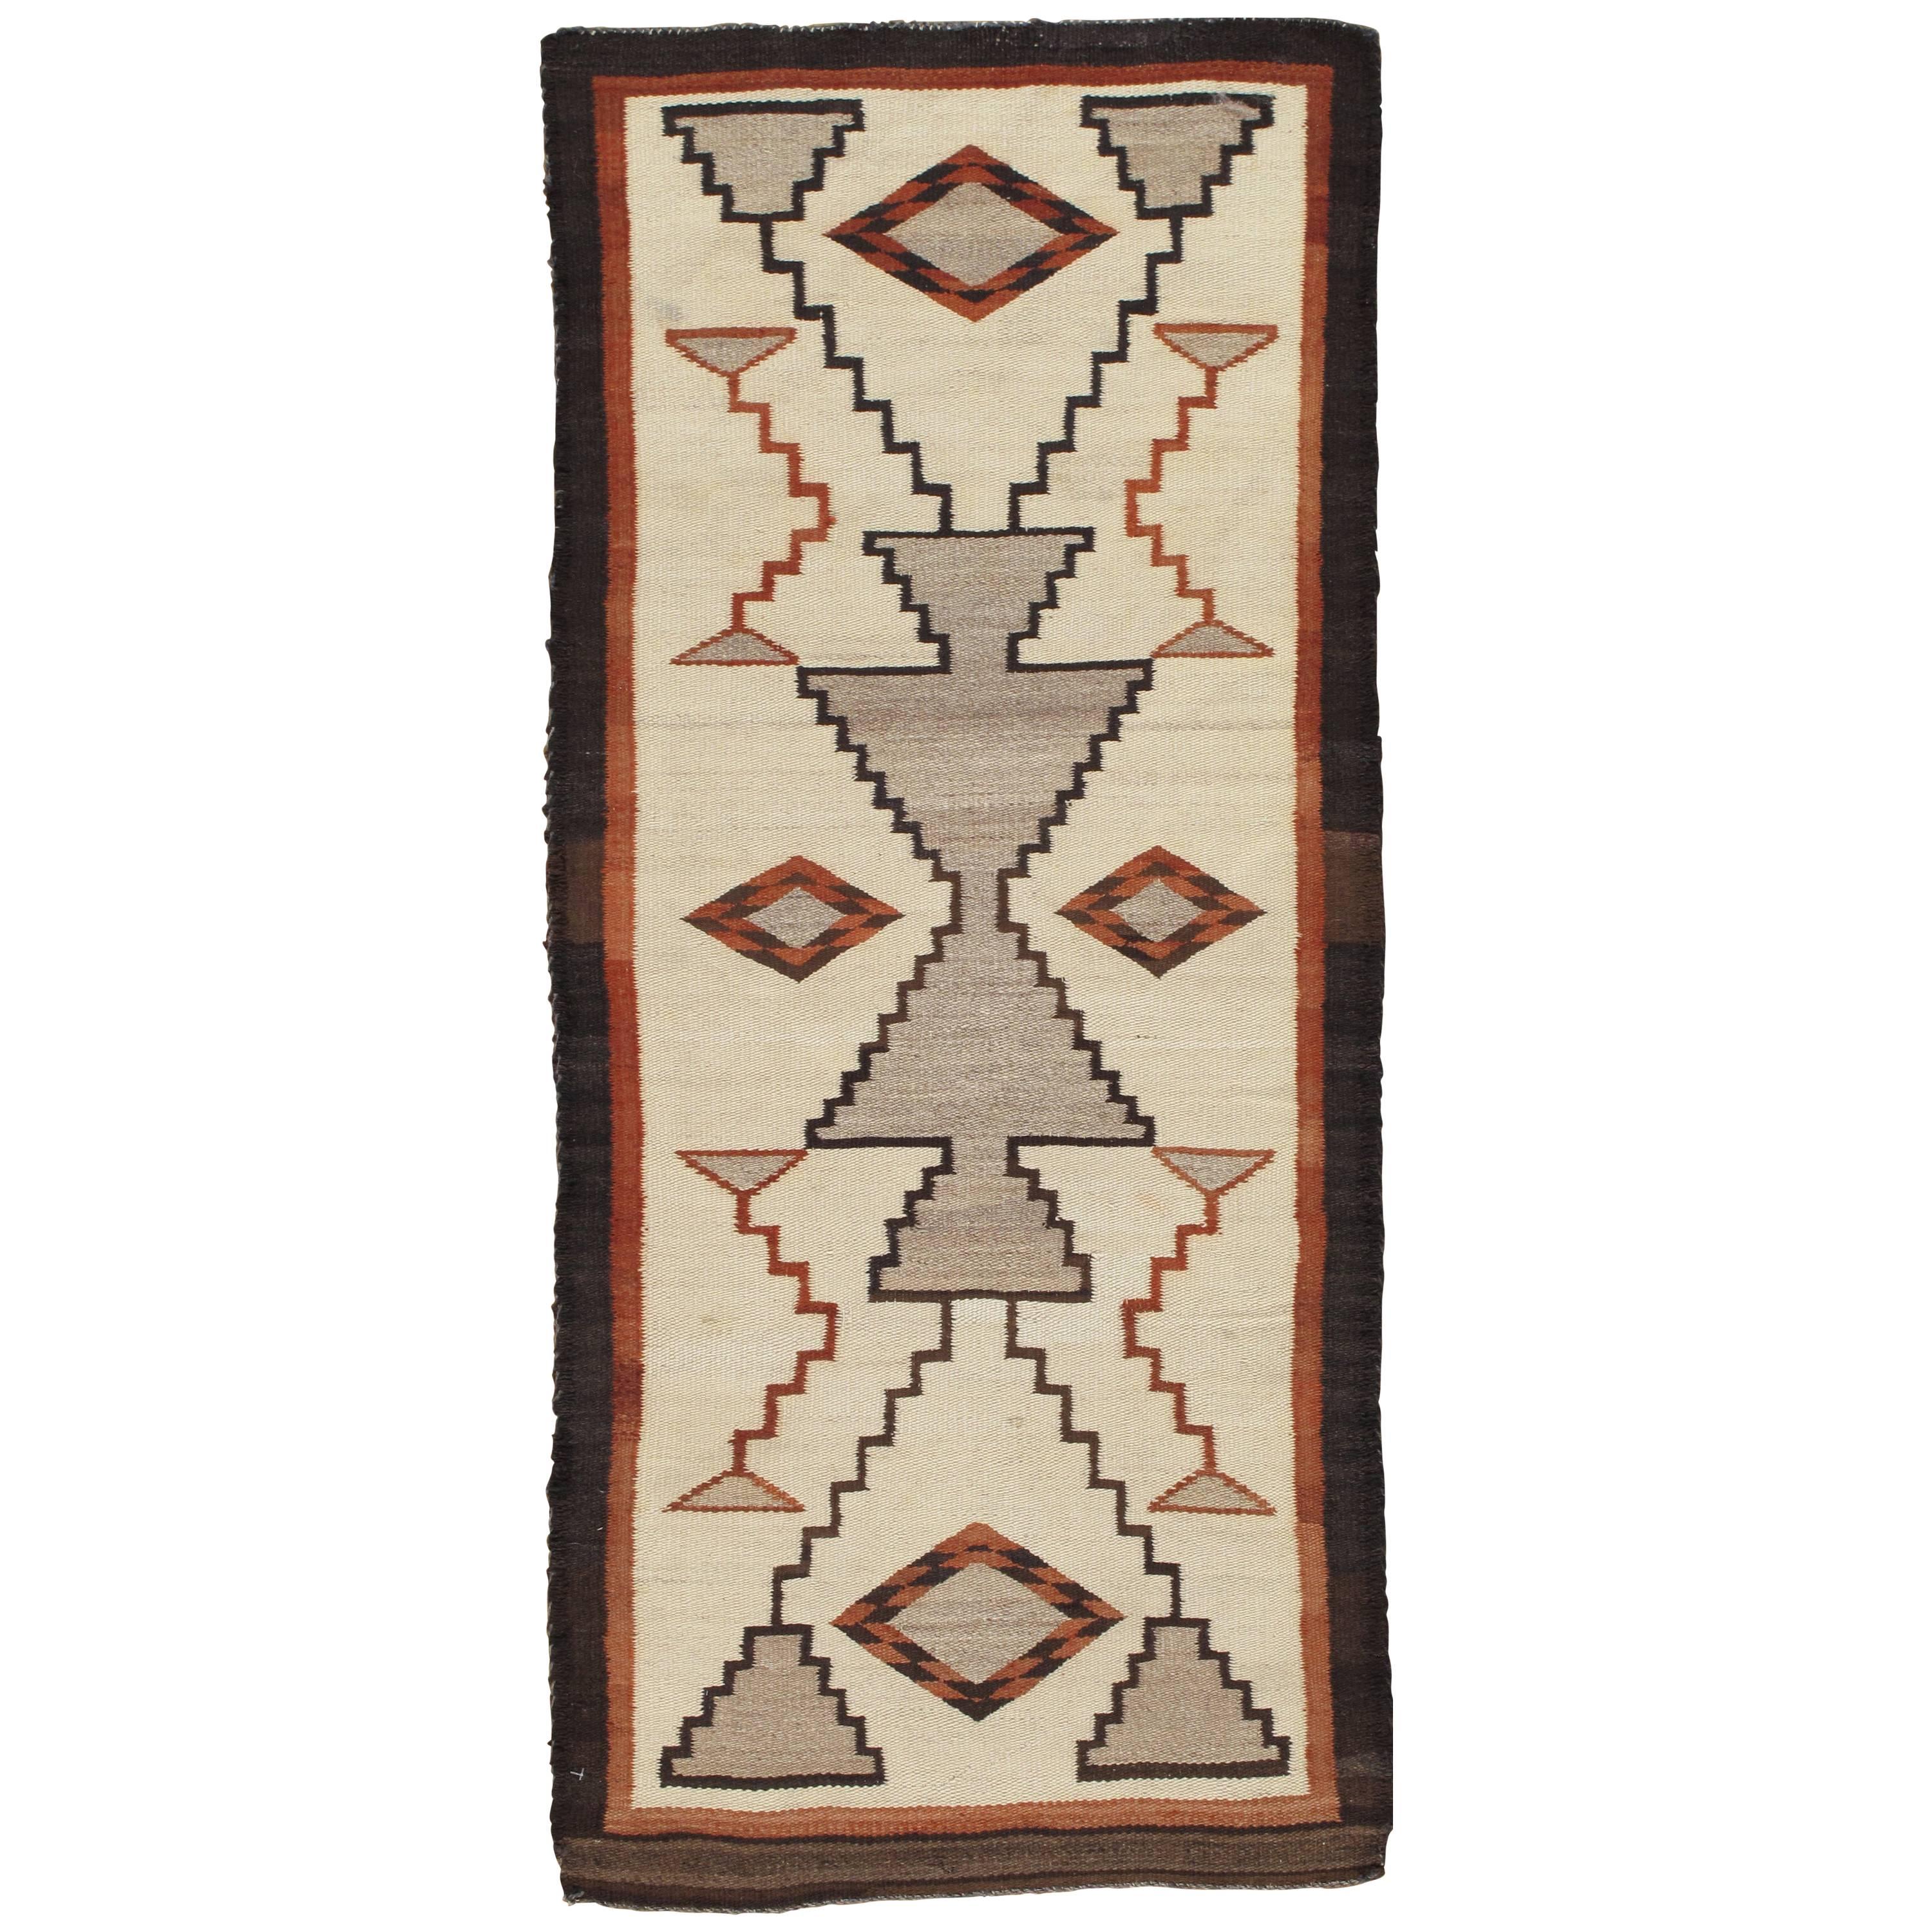 Vintage Navajo Carpet, Folk Rug, Handmade Wool, Beige, Terracotta, Tan